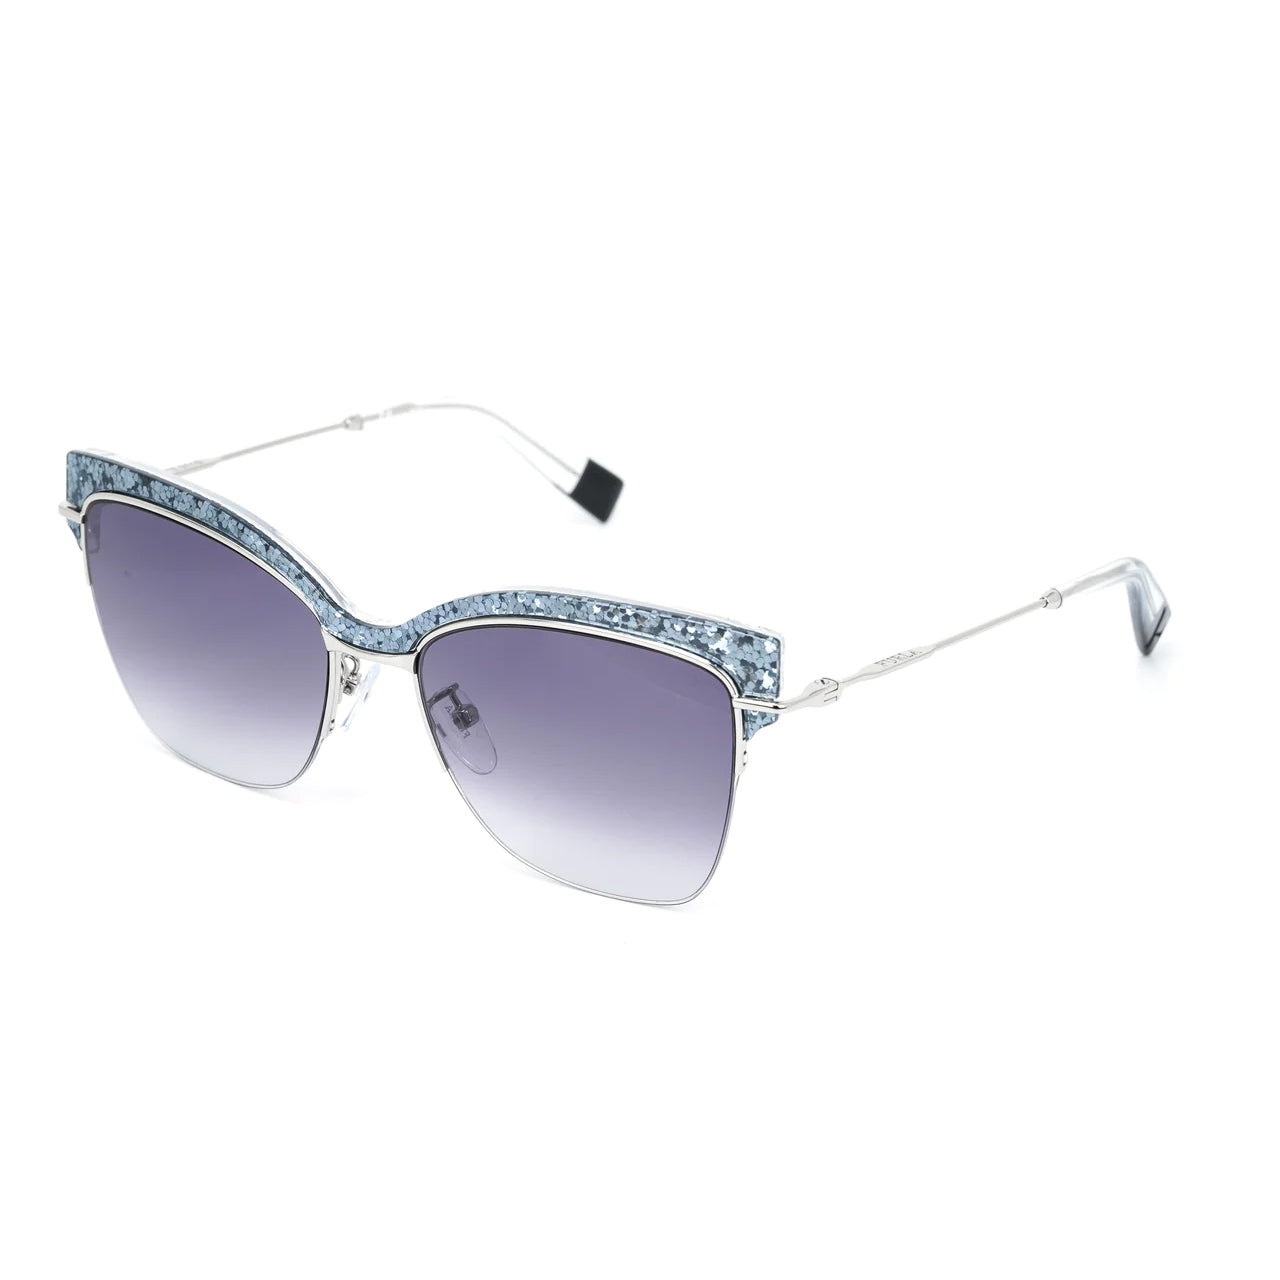 Furla Women's Sunglasses Browline Silver/Purple SFU312 0579